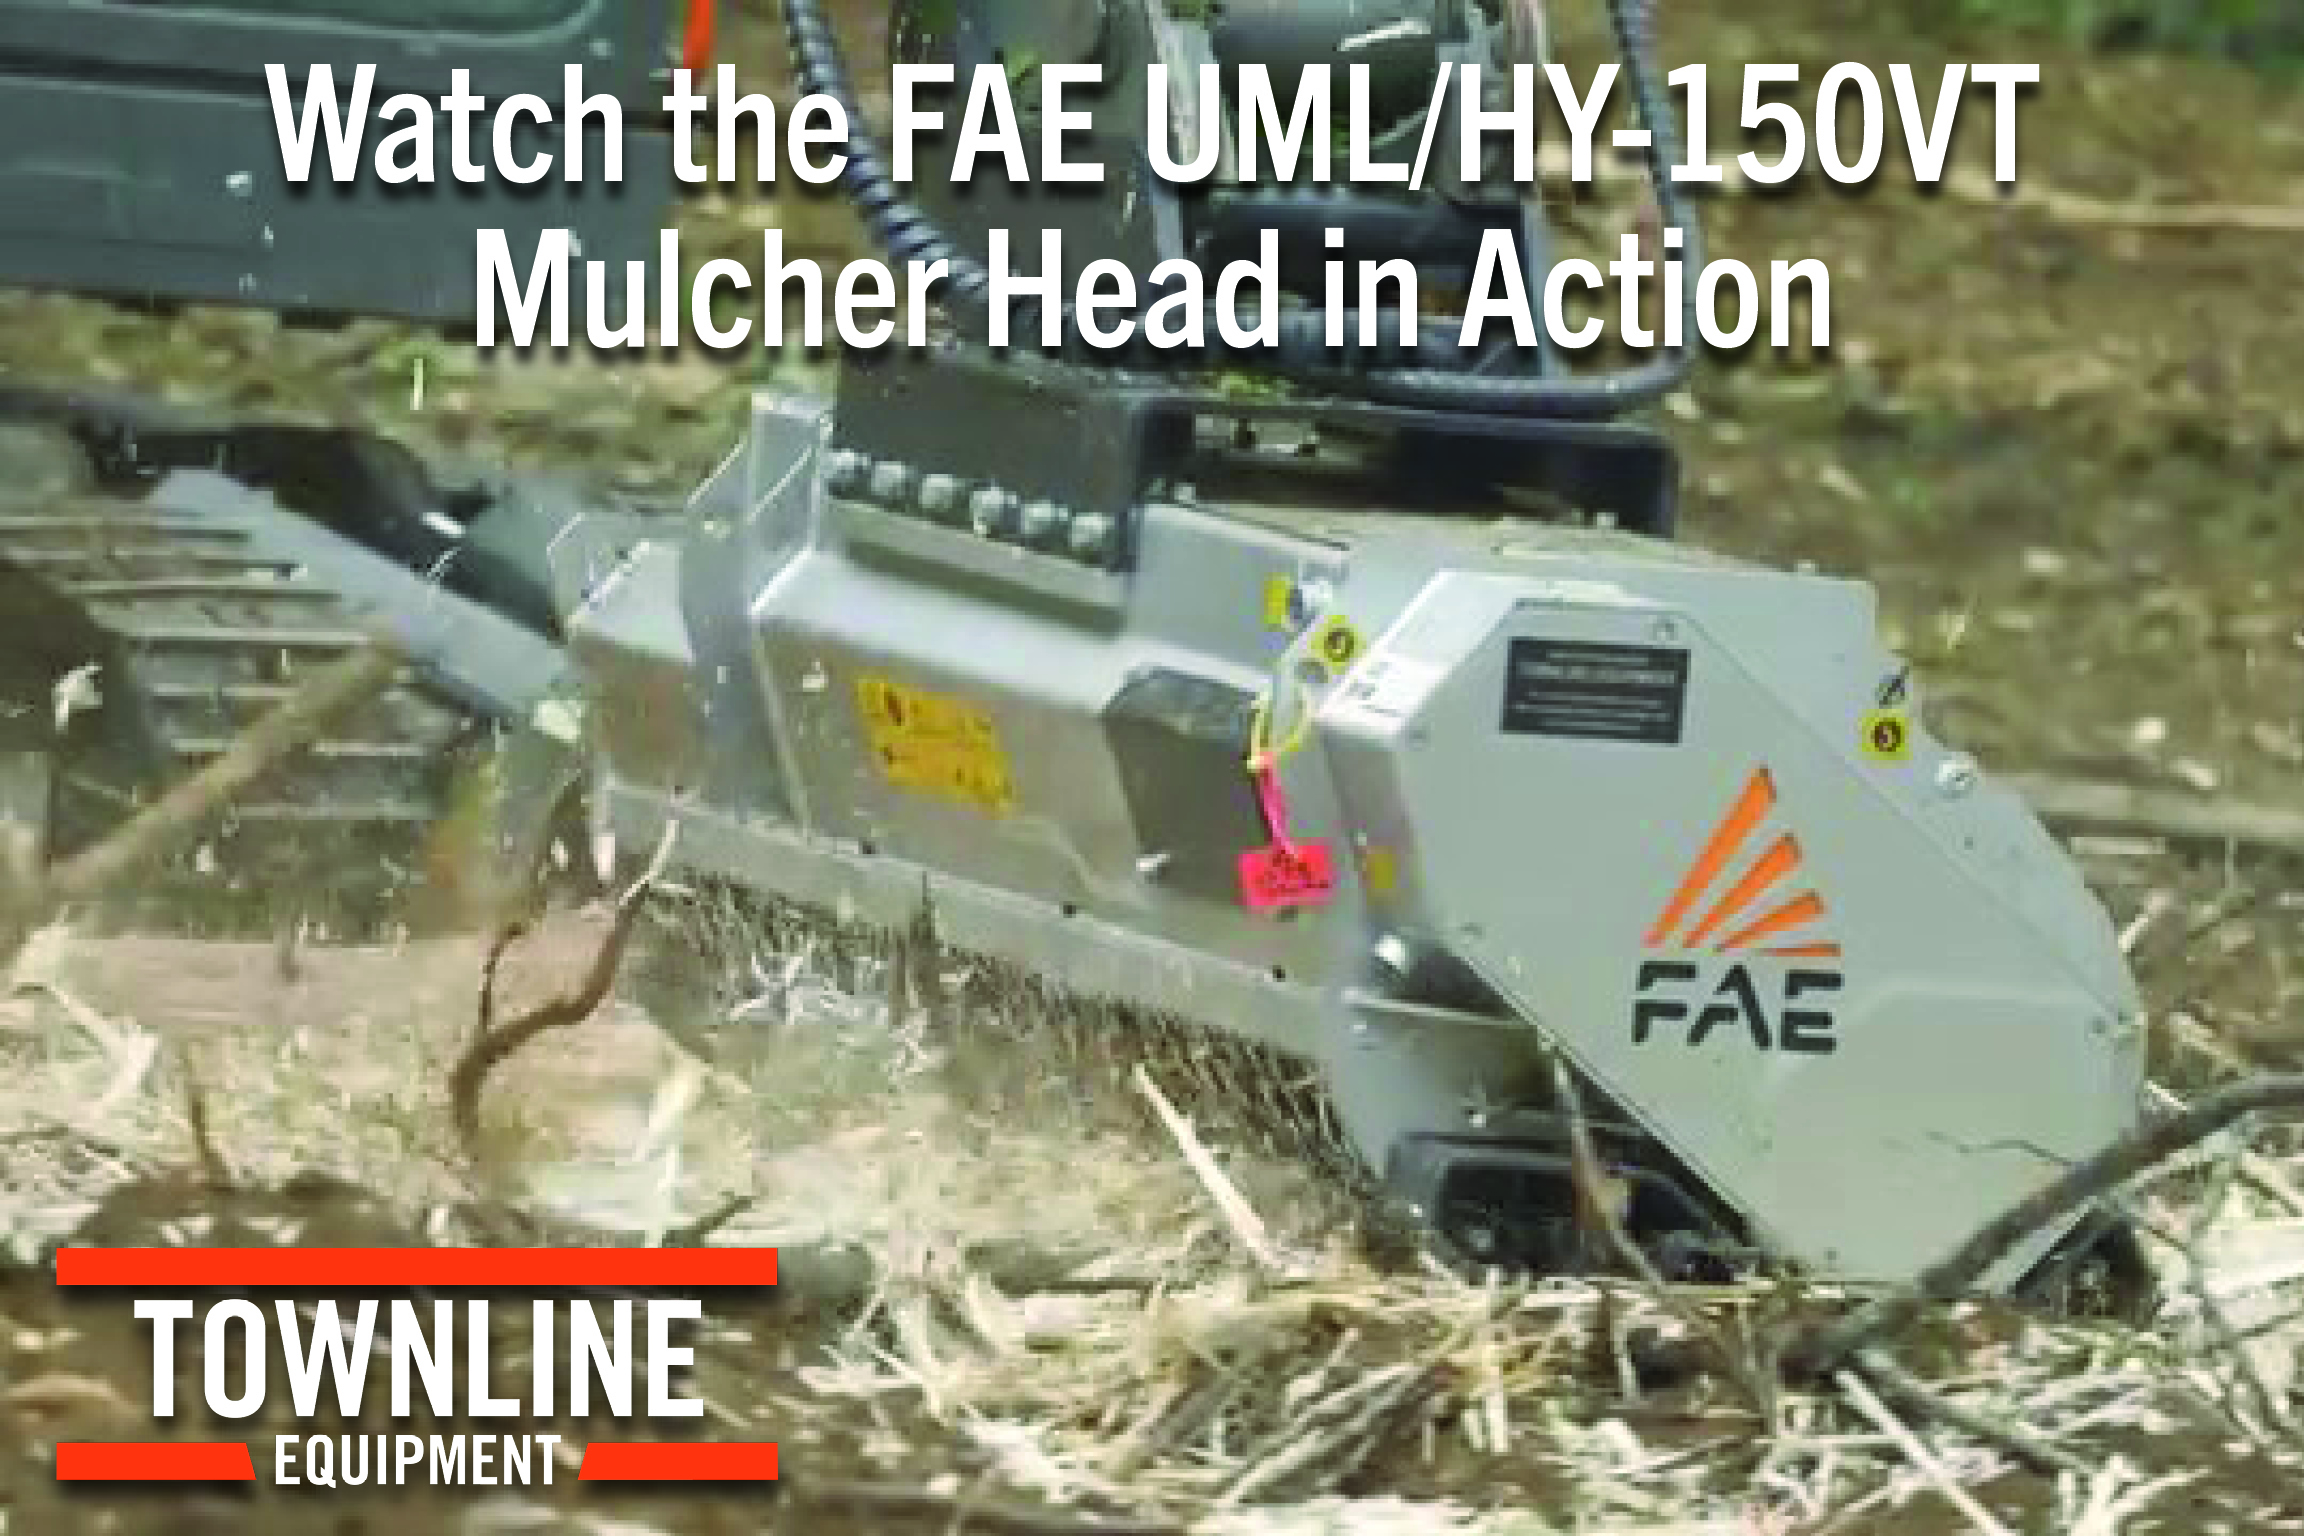 Watch the FAE UML/HY-150VT Mulcher in Action!